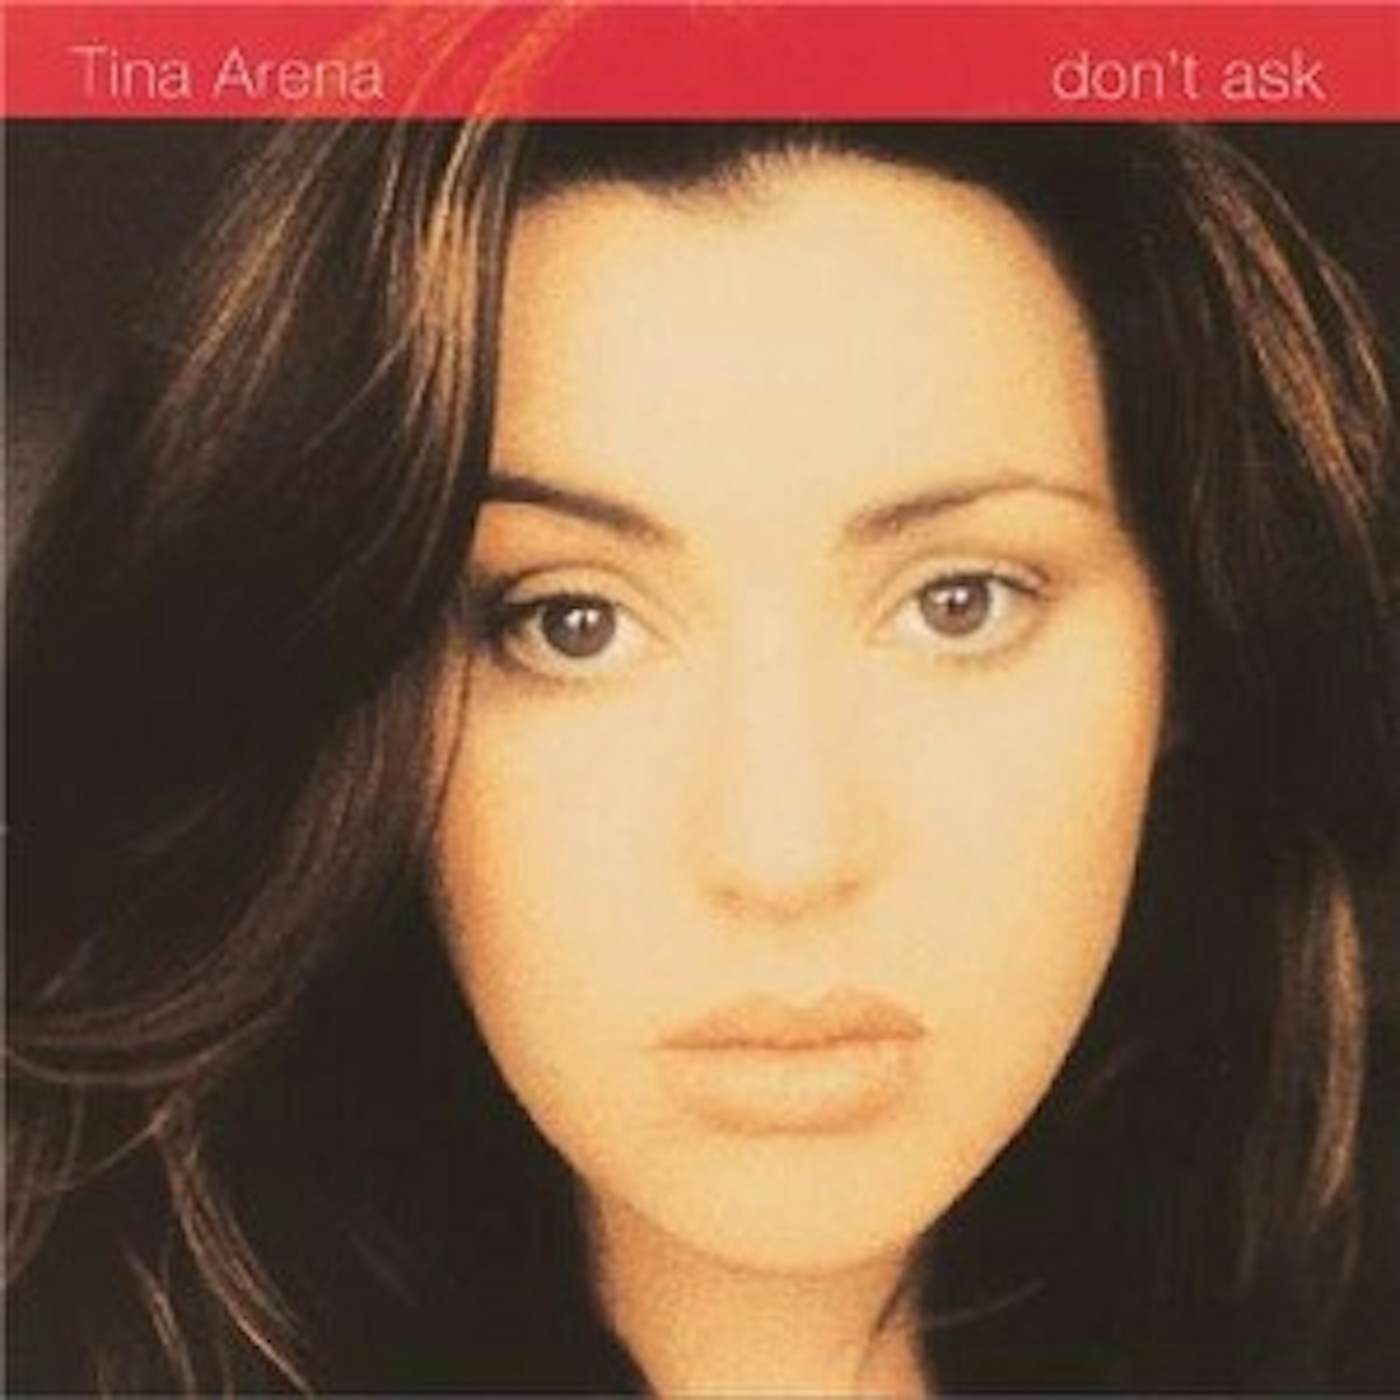 Tina Arena DON'T ASK (GOLD SERIES) CD